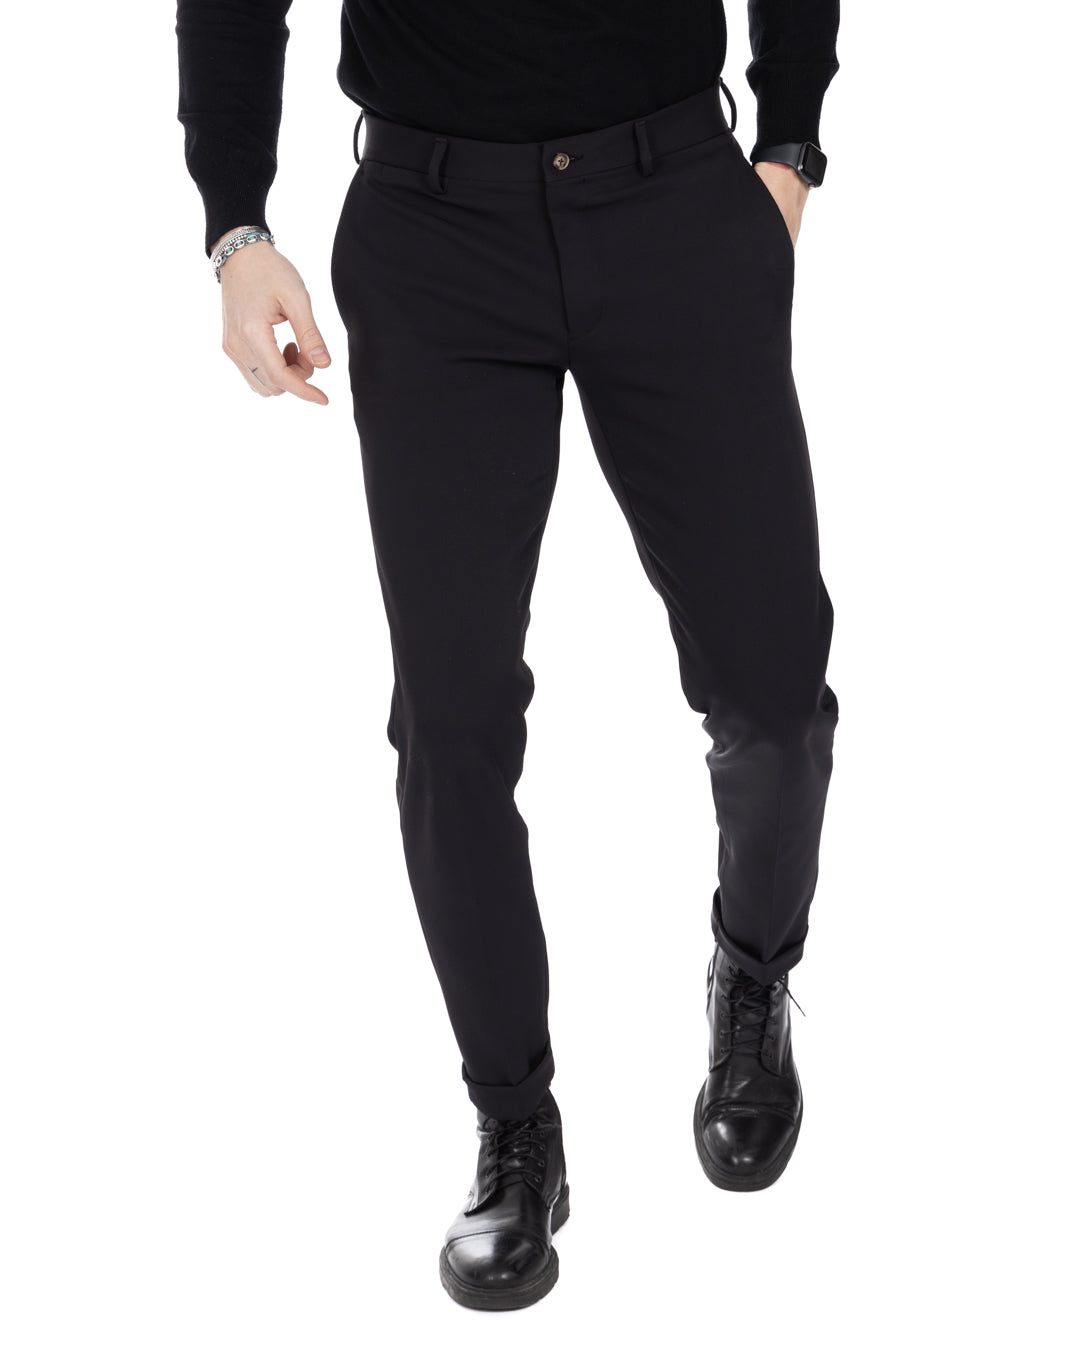 Smith - pantalon technique noir